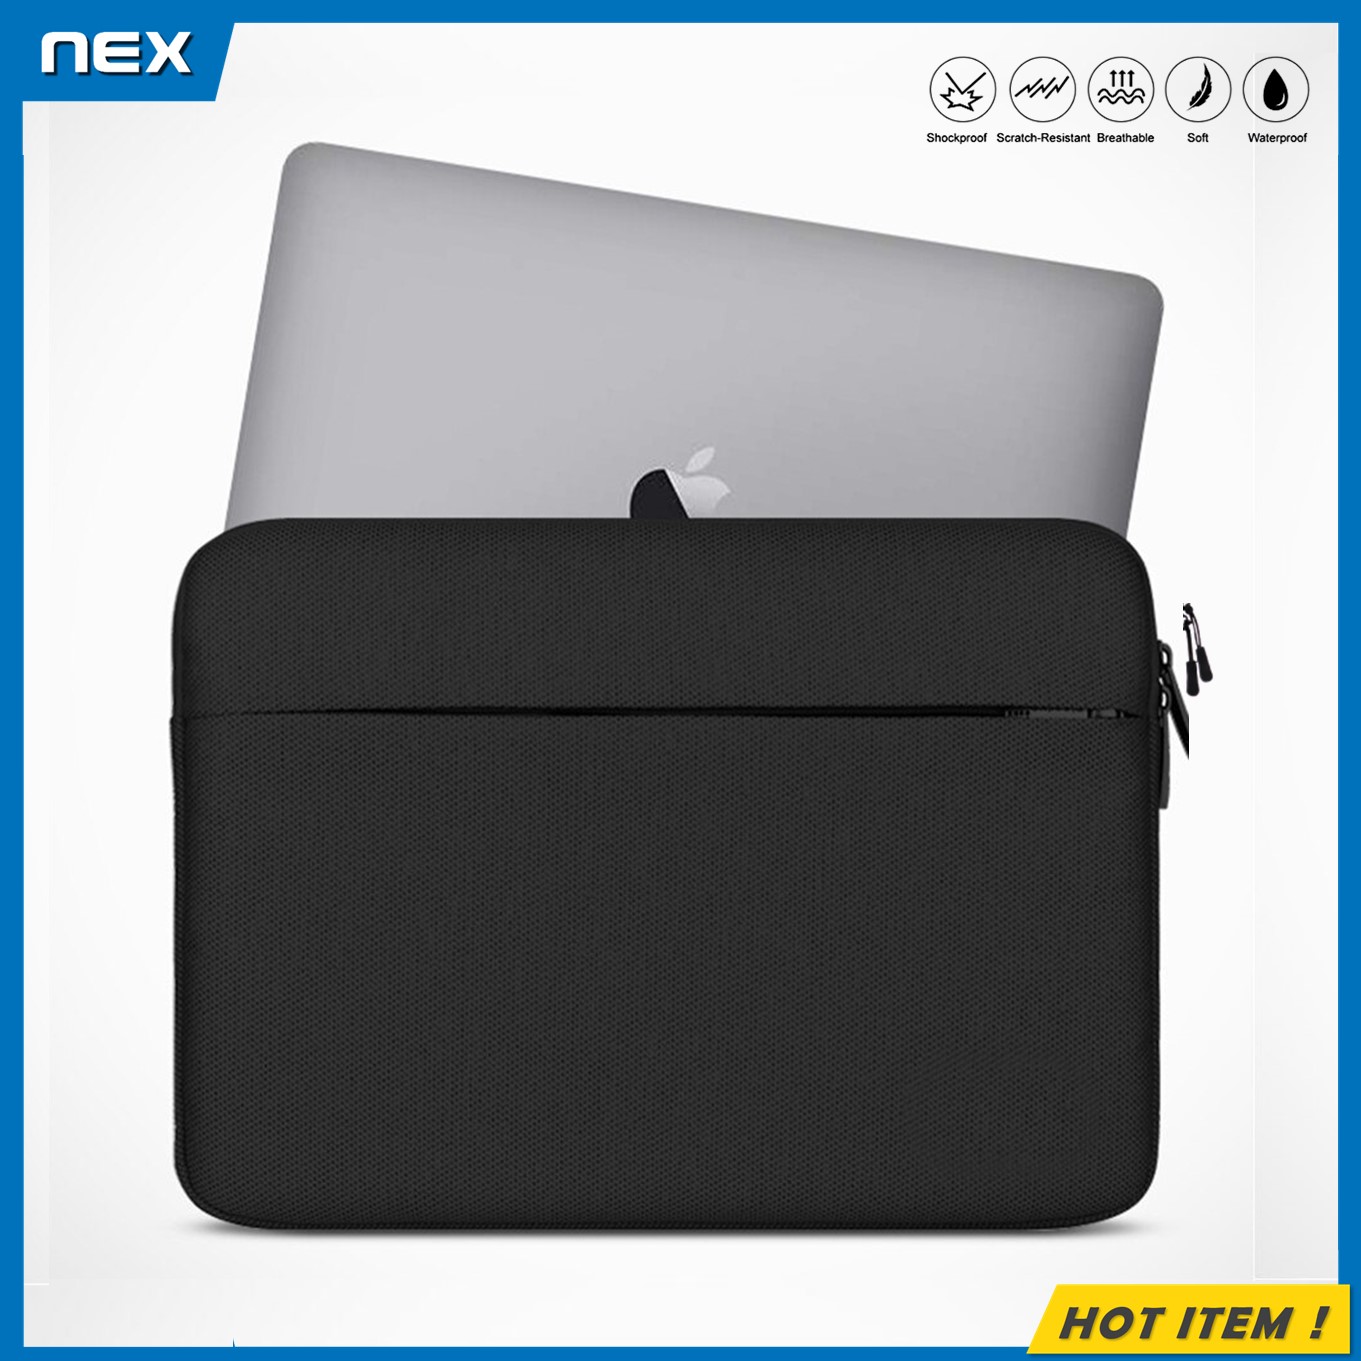 NEX เคสแล็ปท็อป 13.3 14 15.6 นิ้ว เคสMacbook Air Pro กระเป๋าโน๊ตบุ๊ค Soft Case ซองใส่โน๊ตบุ๊ค กันฝุ่น กันรอย กันกระแทก Laptop Bag Macbook Sleeve Case 13.3 14 15 15.6 inch